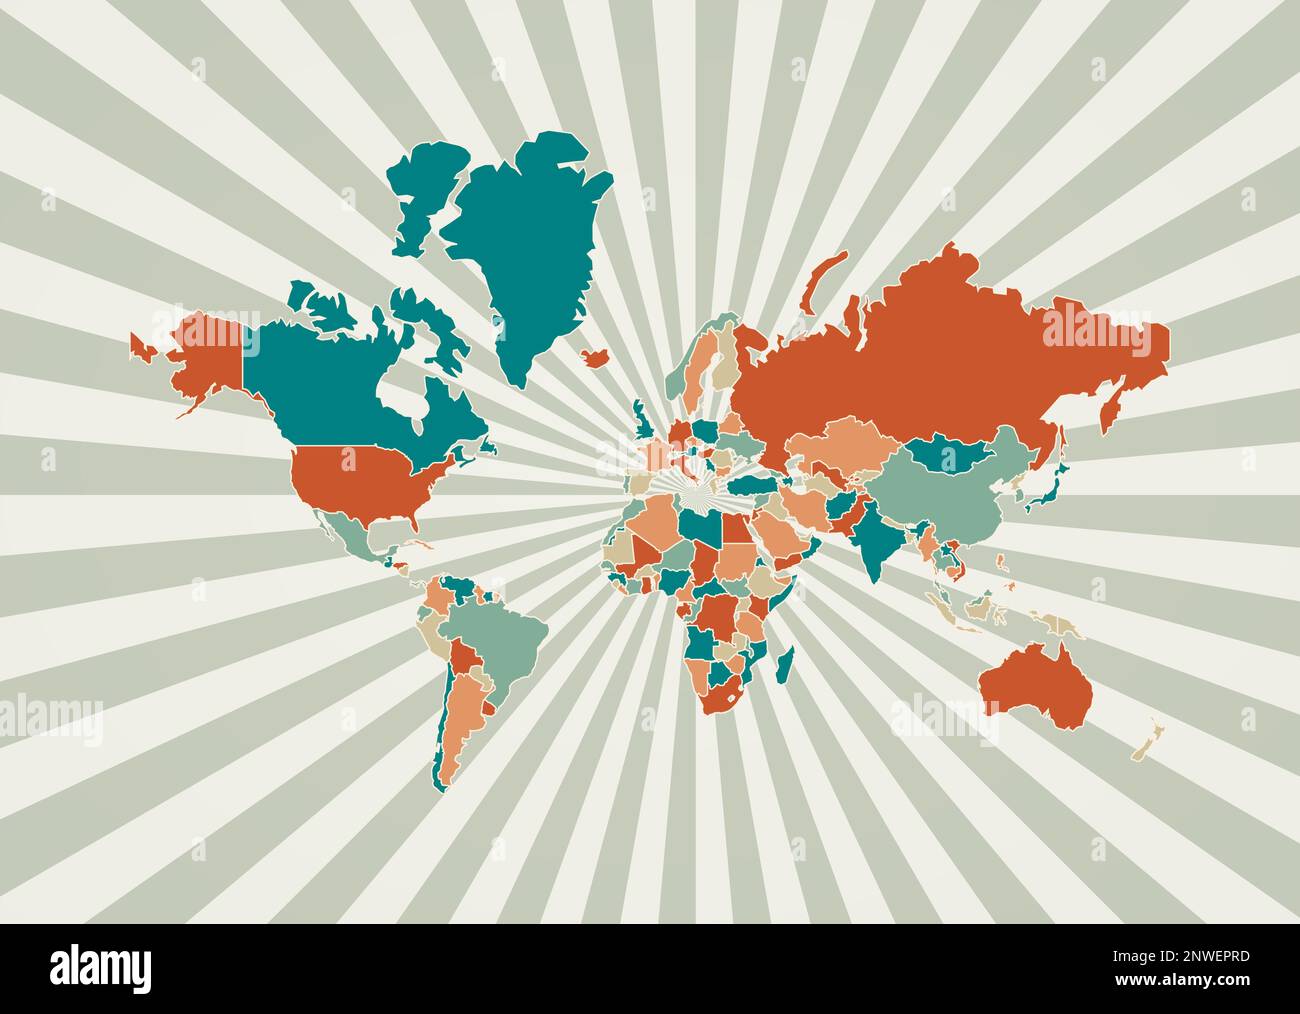 La carte du monde. Affiche avec carte du monde dans une palette de couleurs  rétro. Bordure avec arrière-plan rayons solaires. Illustration vectorielle  Image Vectorielle Stock - Alamy